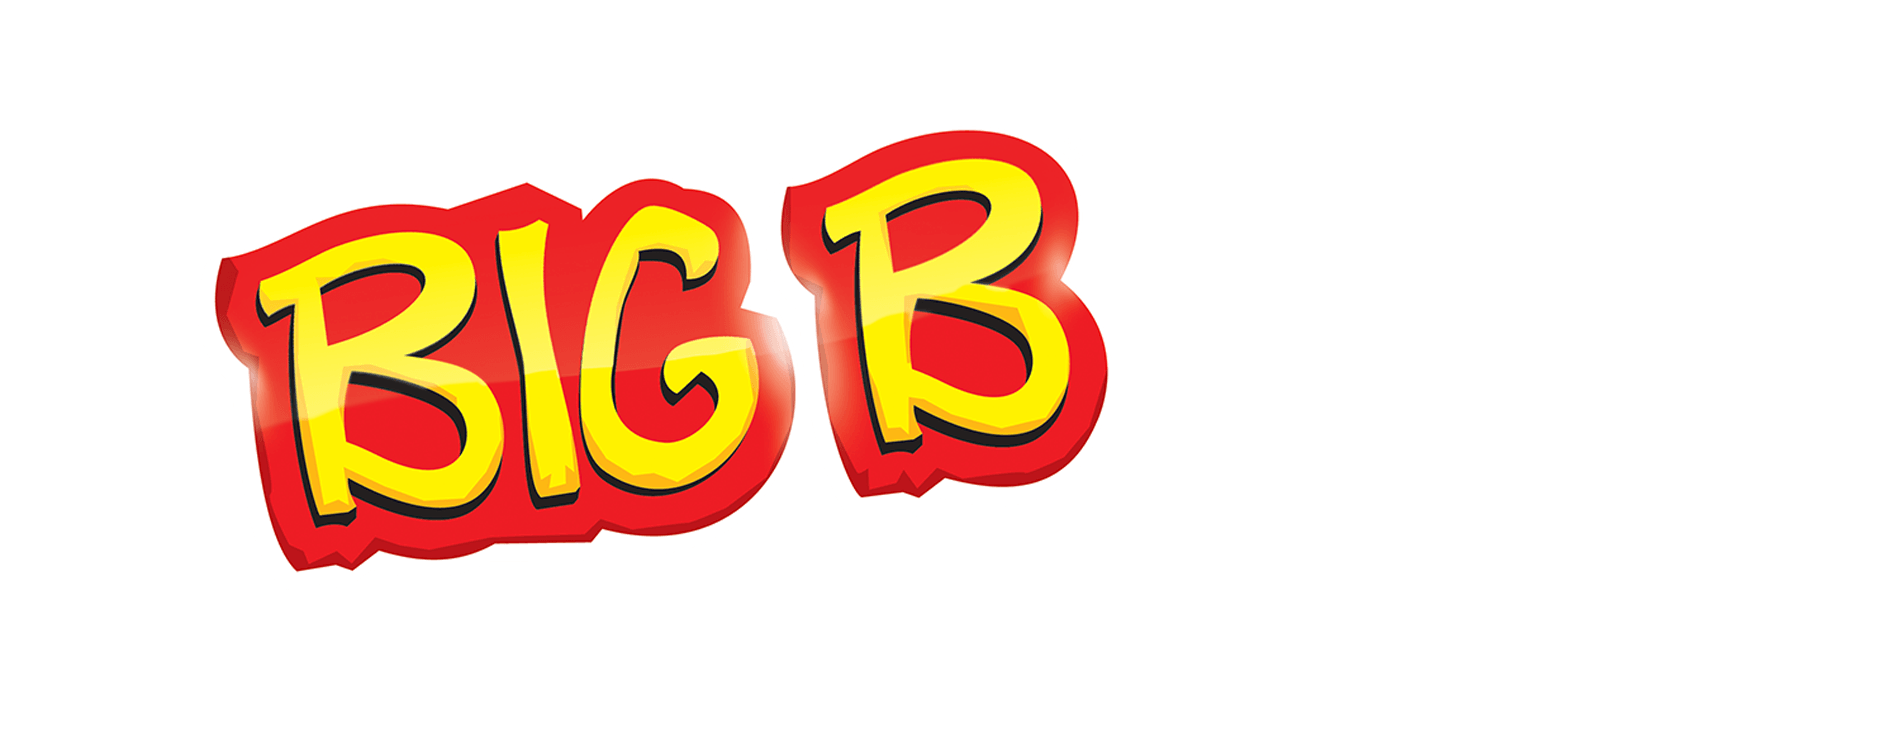 Big B Logo - BIG B